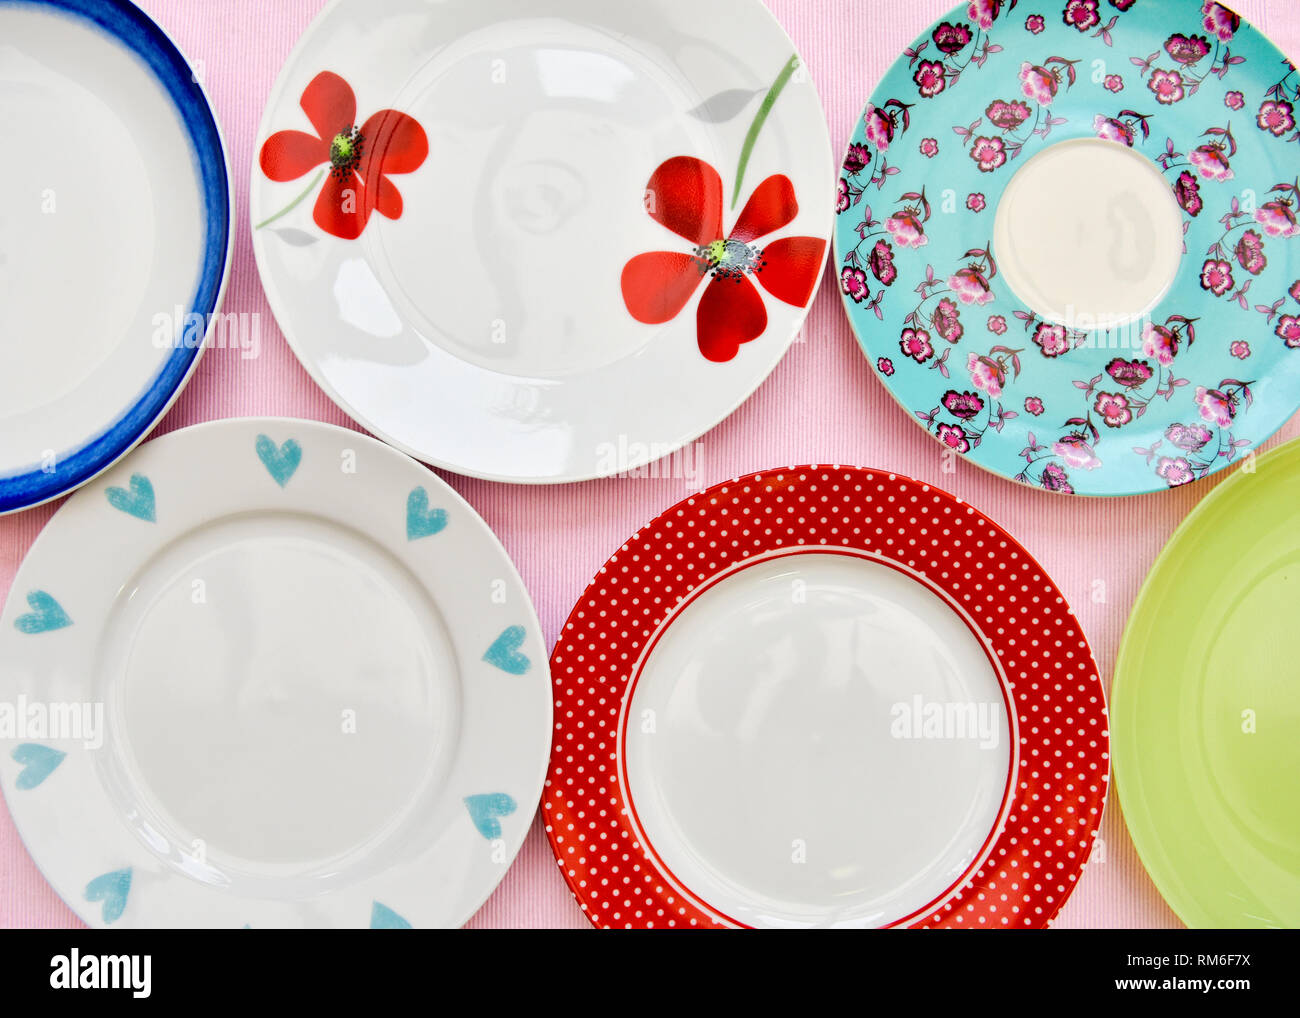 Una selección de seis placas de té bonita contra un fondo de color rosa tomada desde una vista aérea Foto de stock